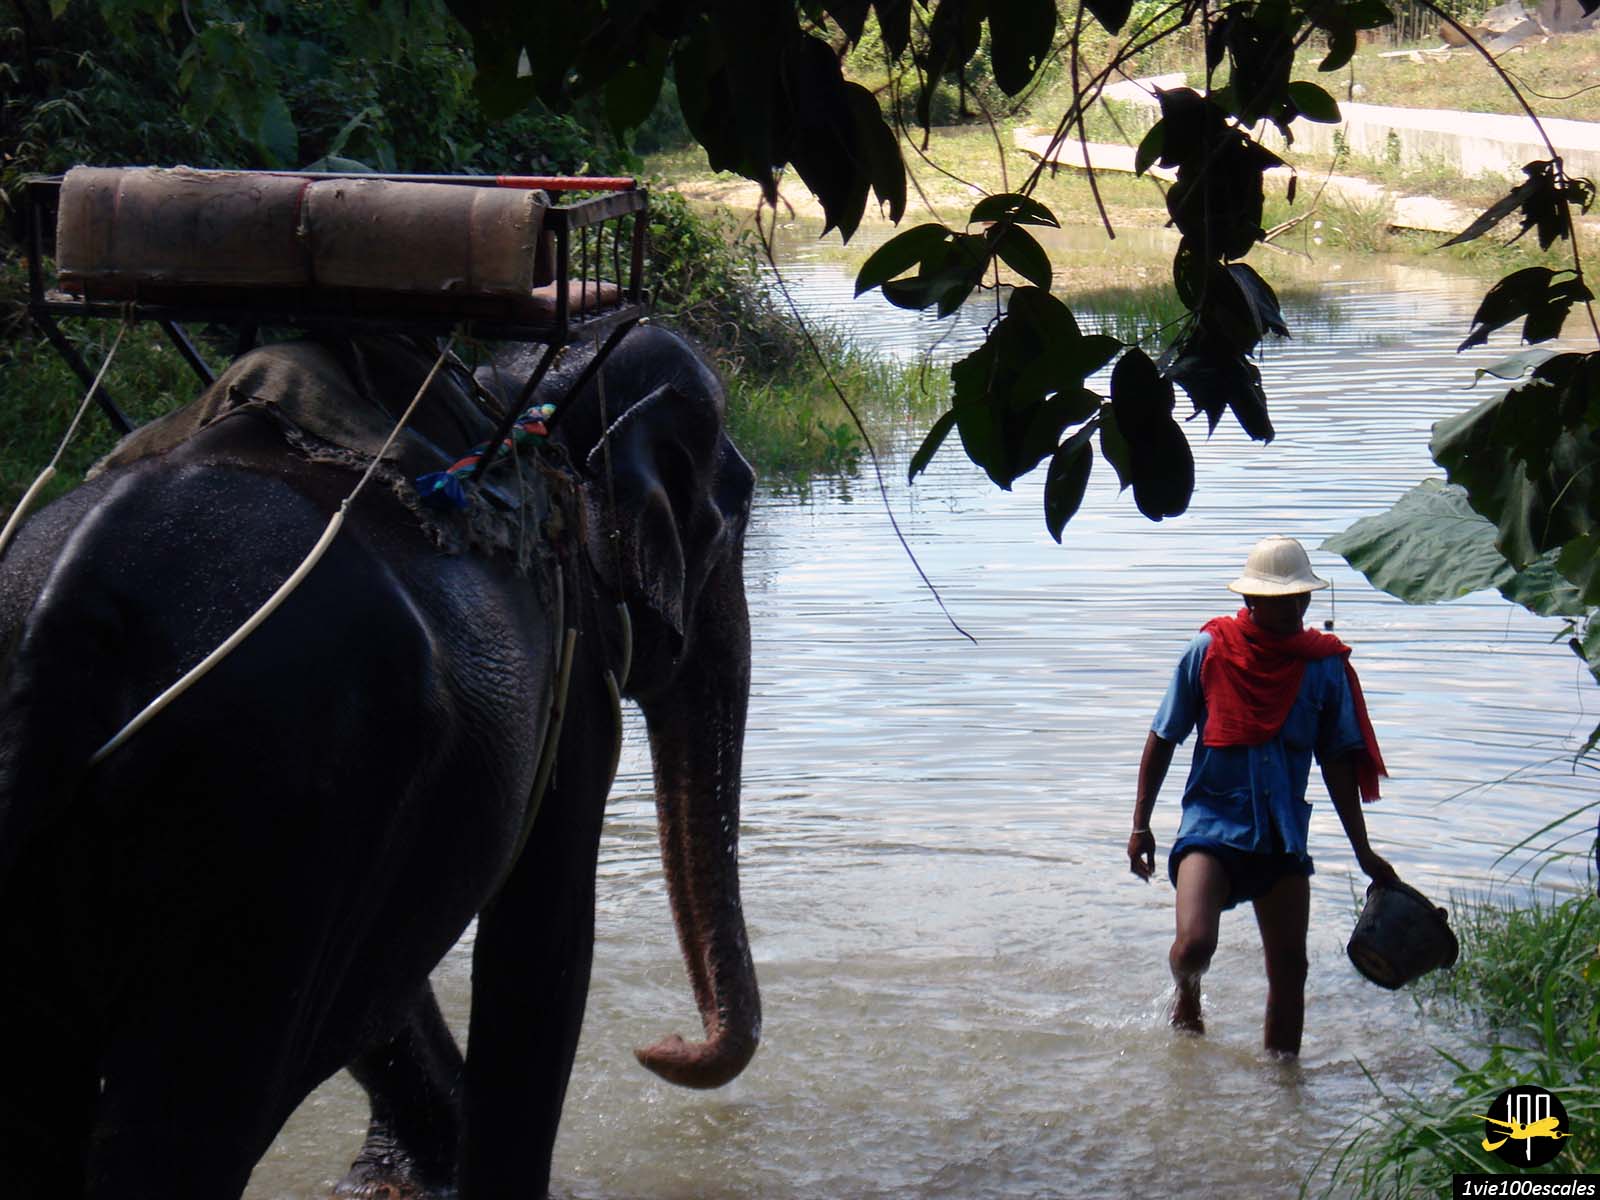 La baignade d'un éléphant dans un fleuve de Phuket en Thaïlande